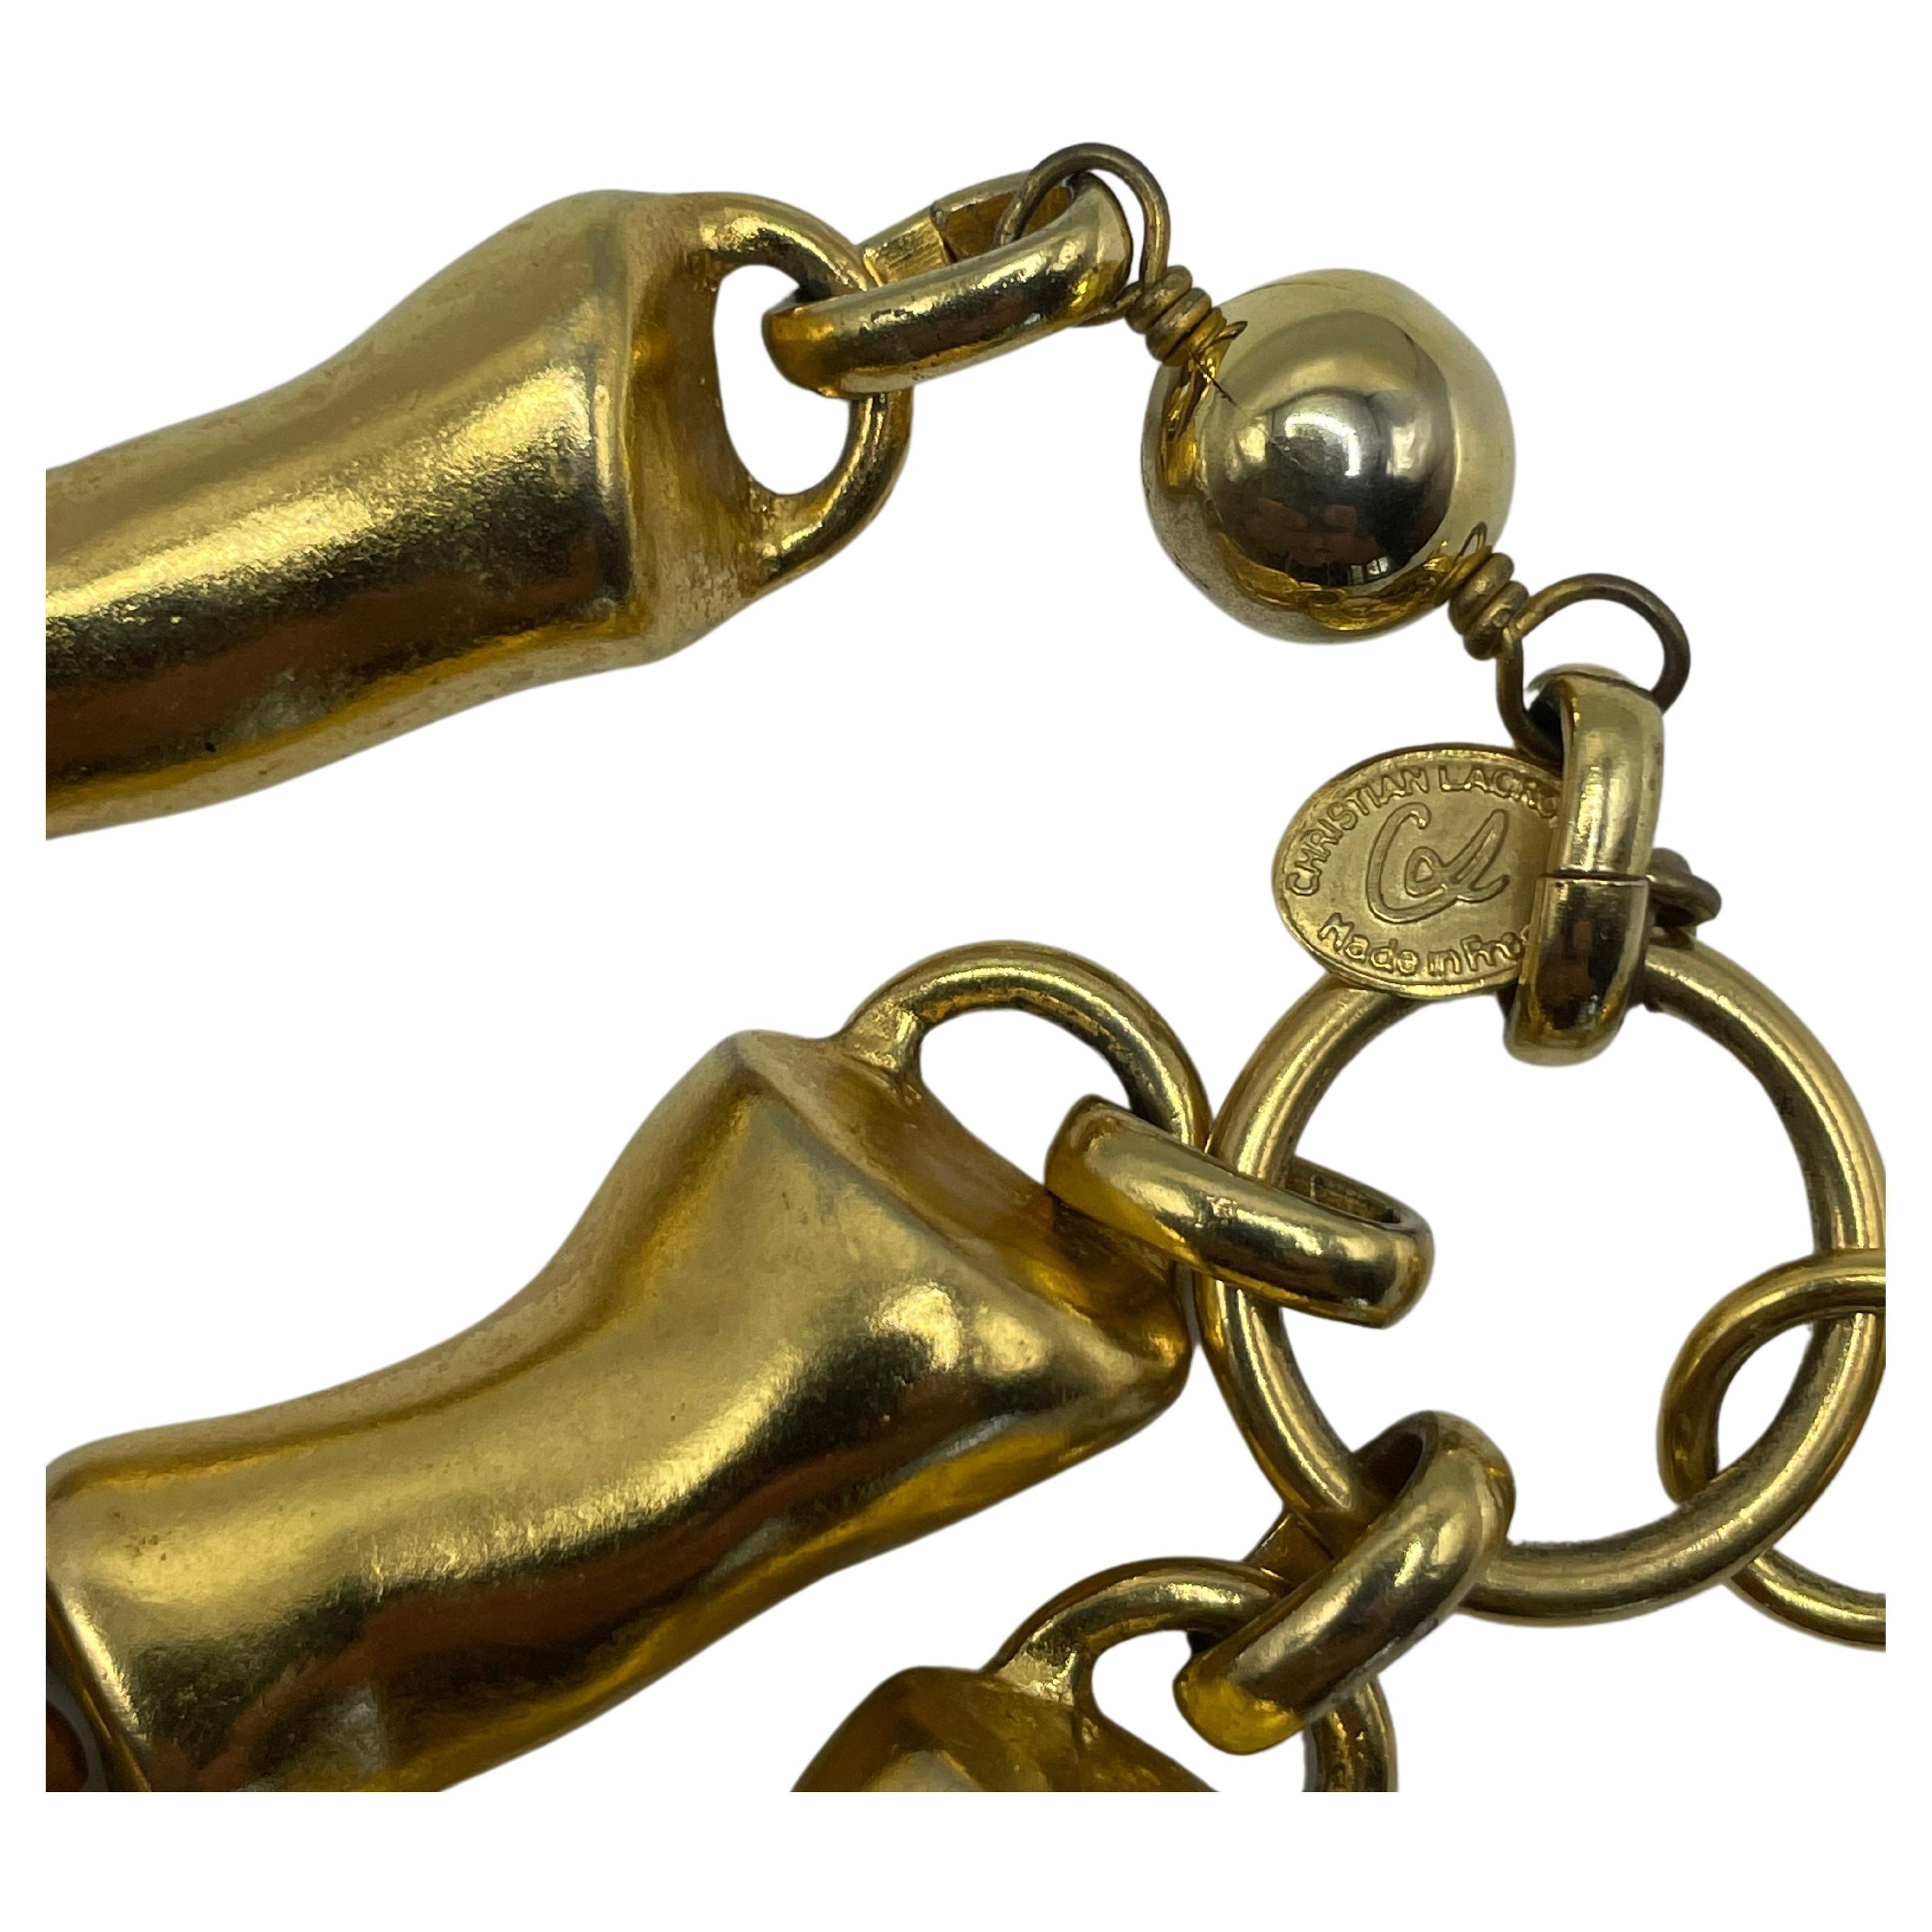 Korallengold-Bernstein-Halskette von Christian Lacroix. An einer einzigen Kette befinden sich drei unterschiedlich große Halsketten.
Vergoldet.
In tadellosem Zustand und ausgezeichneter Qualität. 
Stempel von Christian Lacroix. 
Hergestellt in